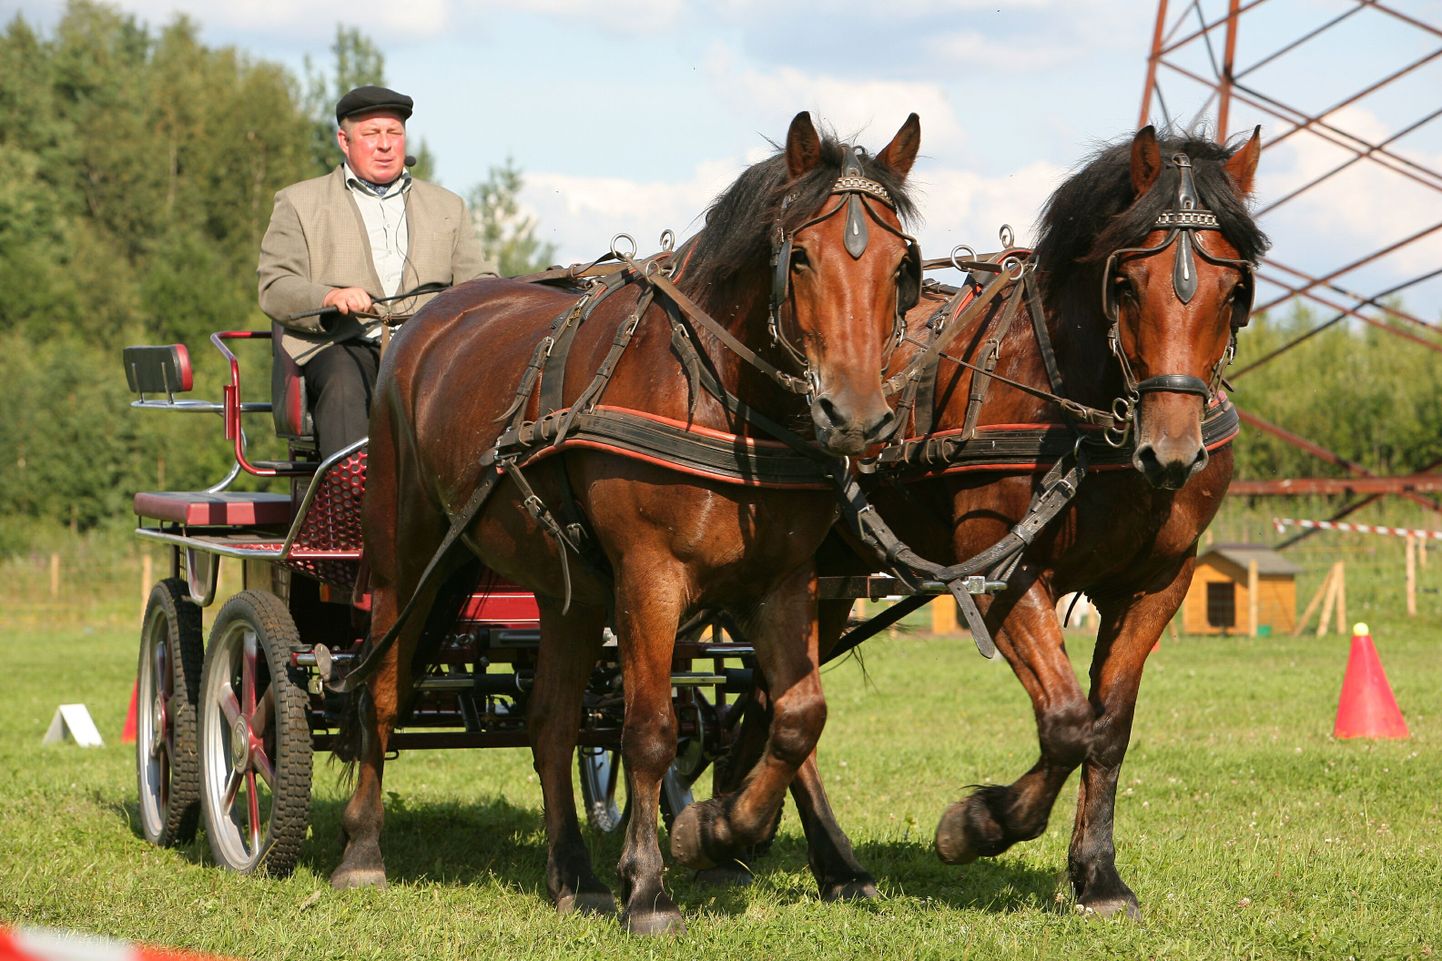 Eesti hobusekasvatajate seltsi teatel toimub laupäeval, 24. mail Nurmenuku talus teine künnipäev, kus demonstreeritakse Eesti raskeveohobustega vanu põllutöövõtteid. Arhiivifoto.